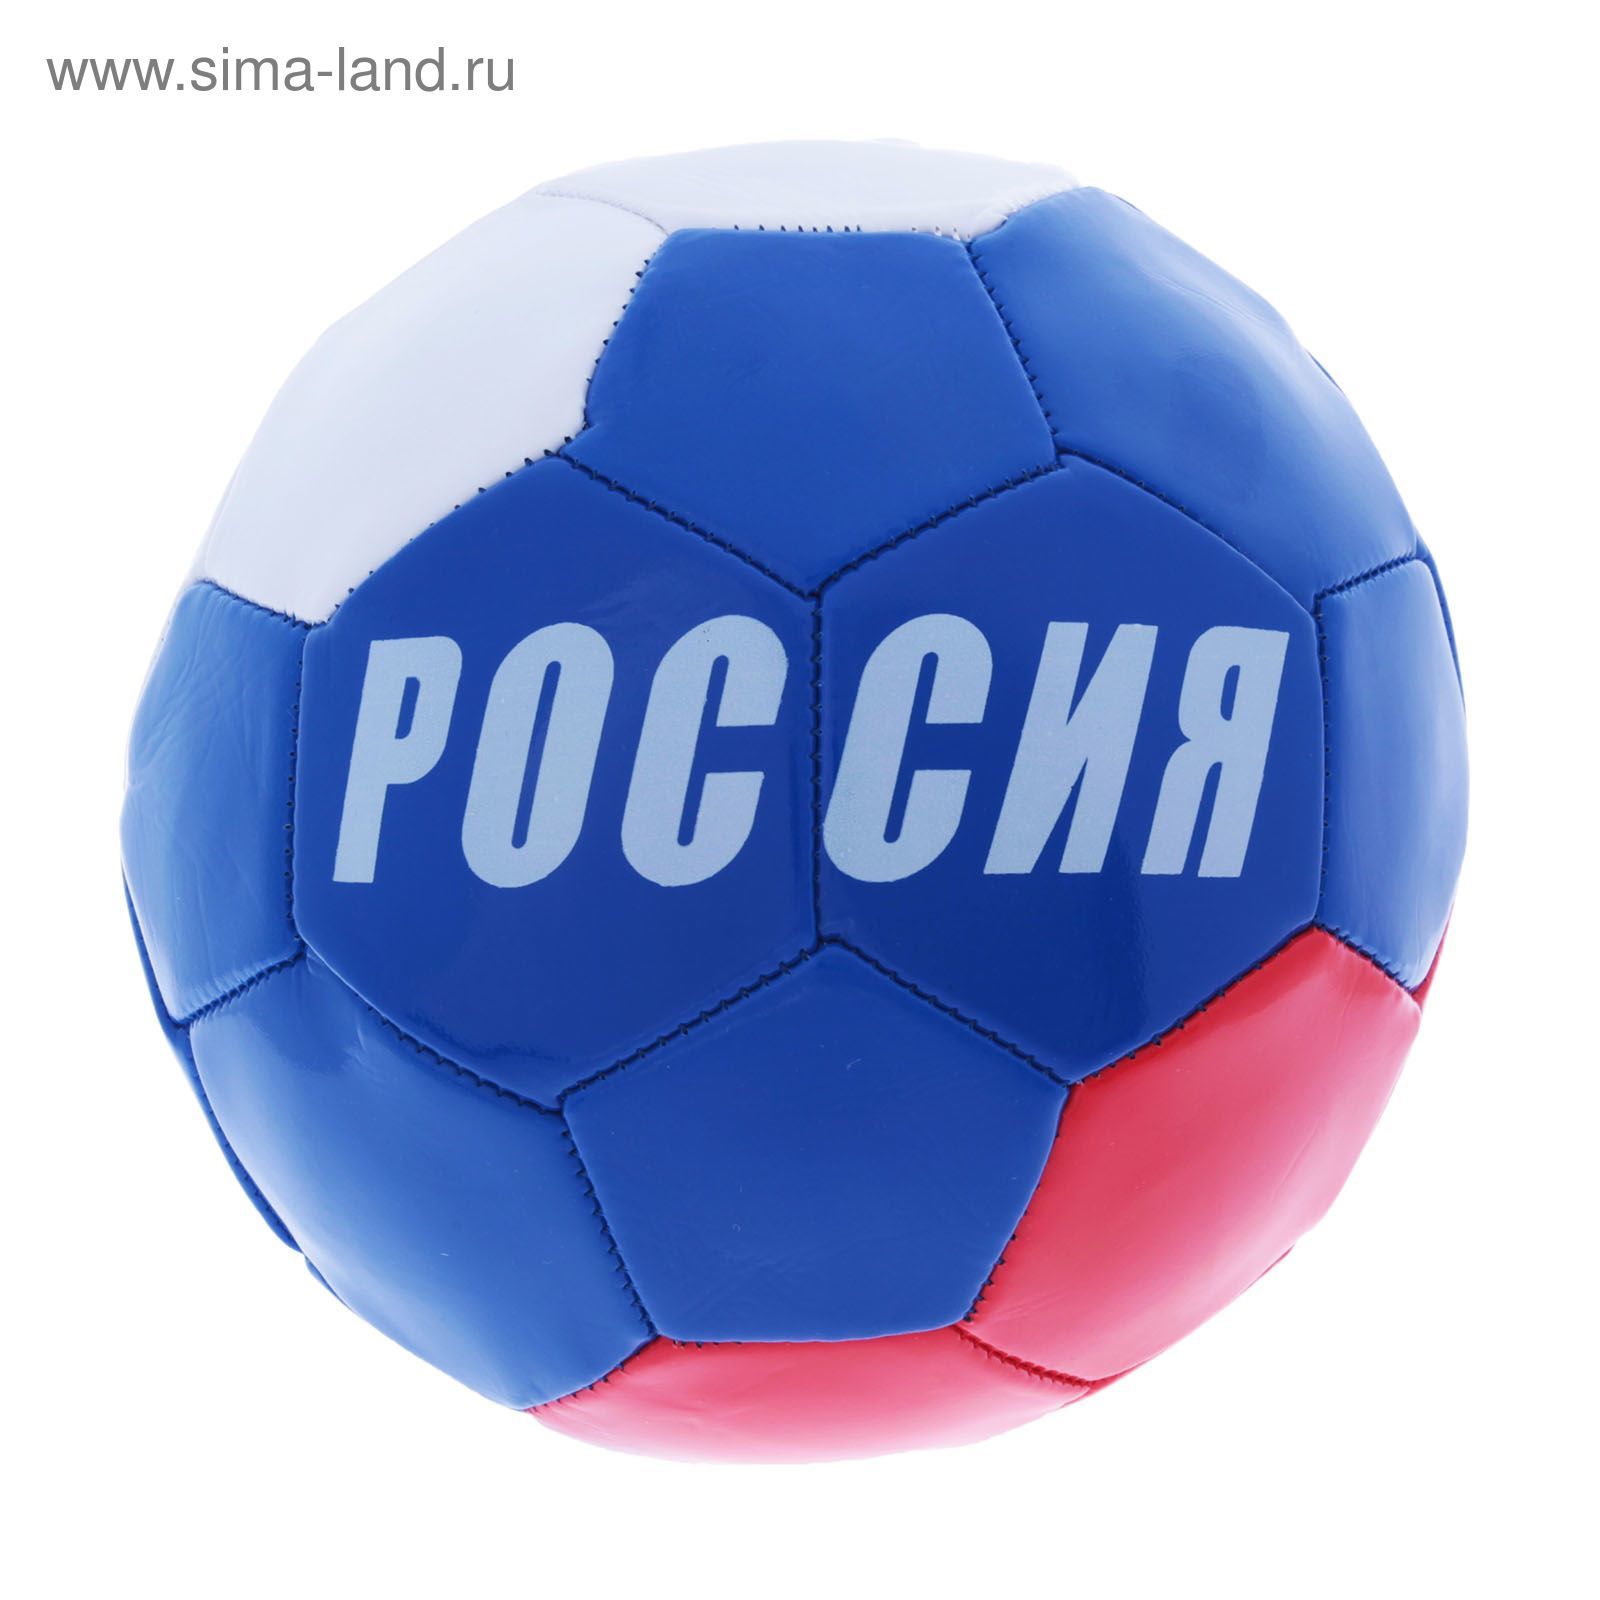 Мяч футбольный "Россия", 32 панели, PVC, 2 подслоя, машинная сшивка, размер 5